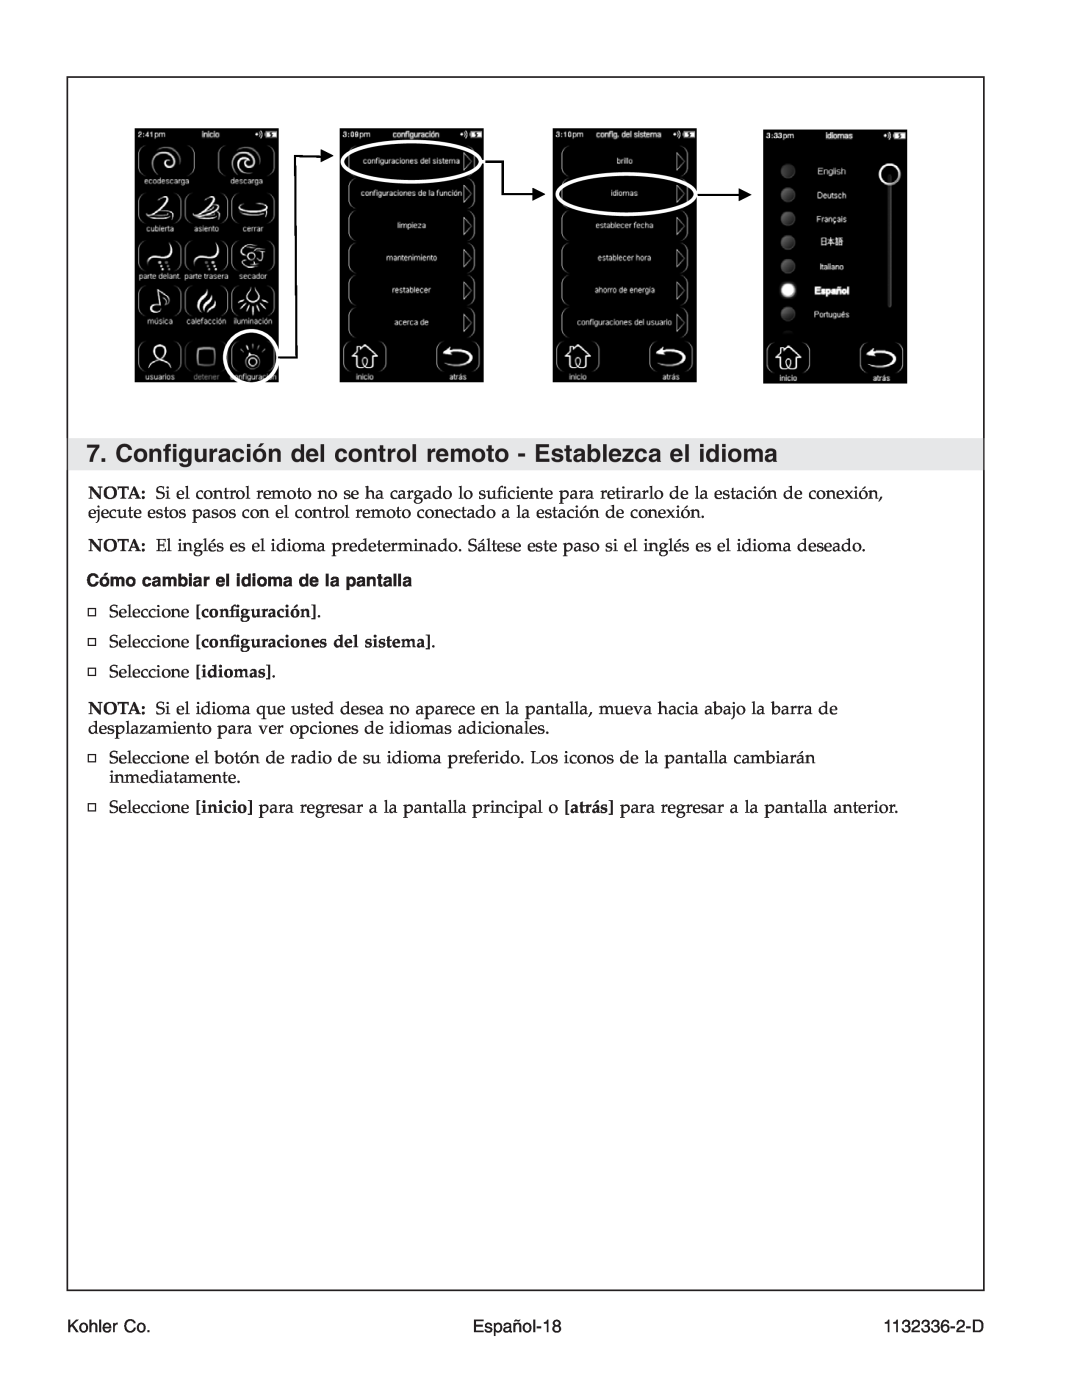 Kohler K-3900 manual Cómo cambiar el idioma de la pantalla, Seleccione conﬁguración, Seleccione conﬁguraciones del sistema 